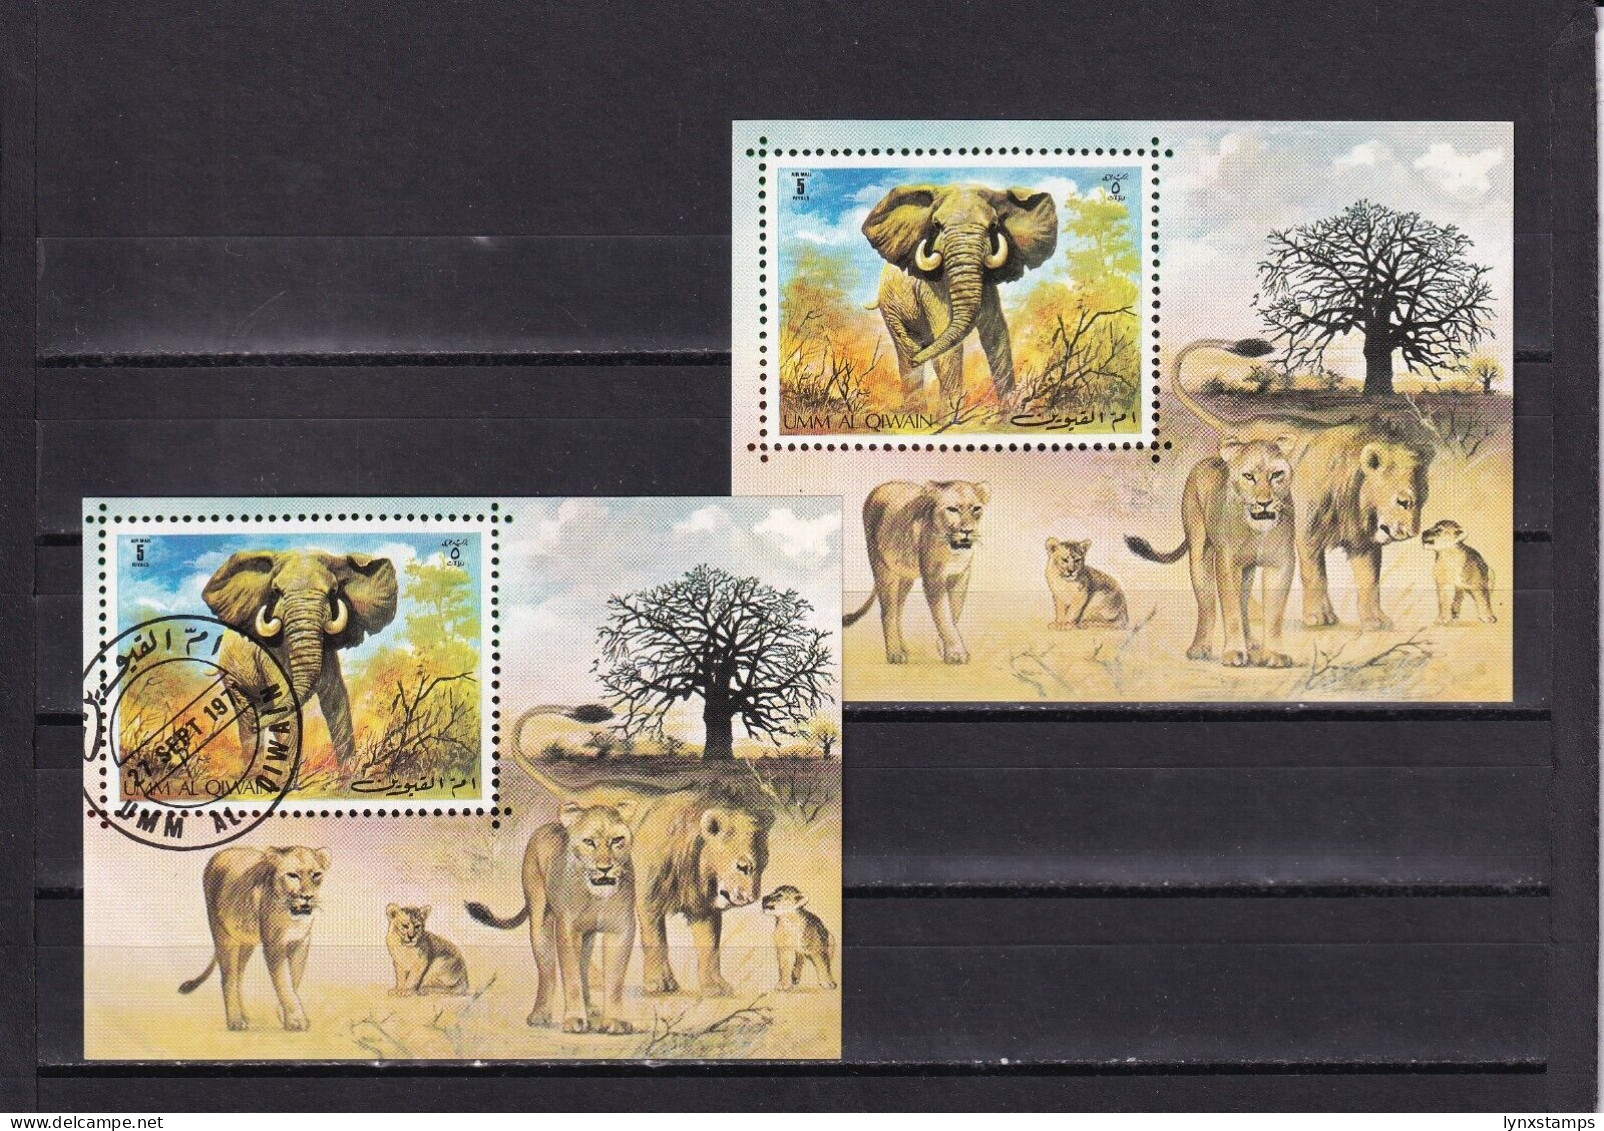 SA03 Umm Al Qiwain UAE 1971 Minisheet With Elephants Used And Mint - Elefantes